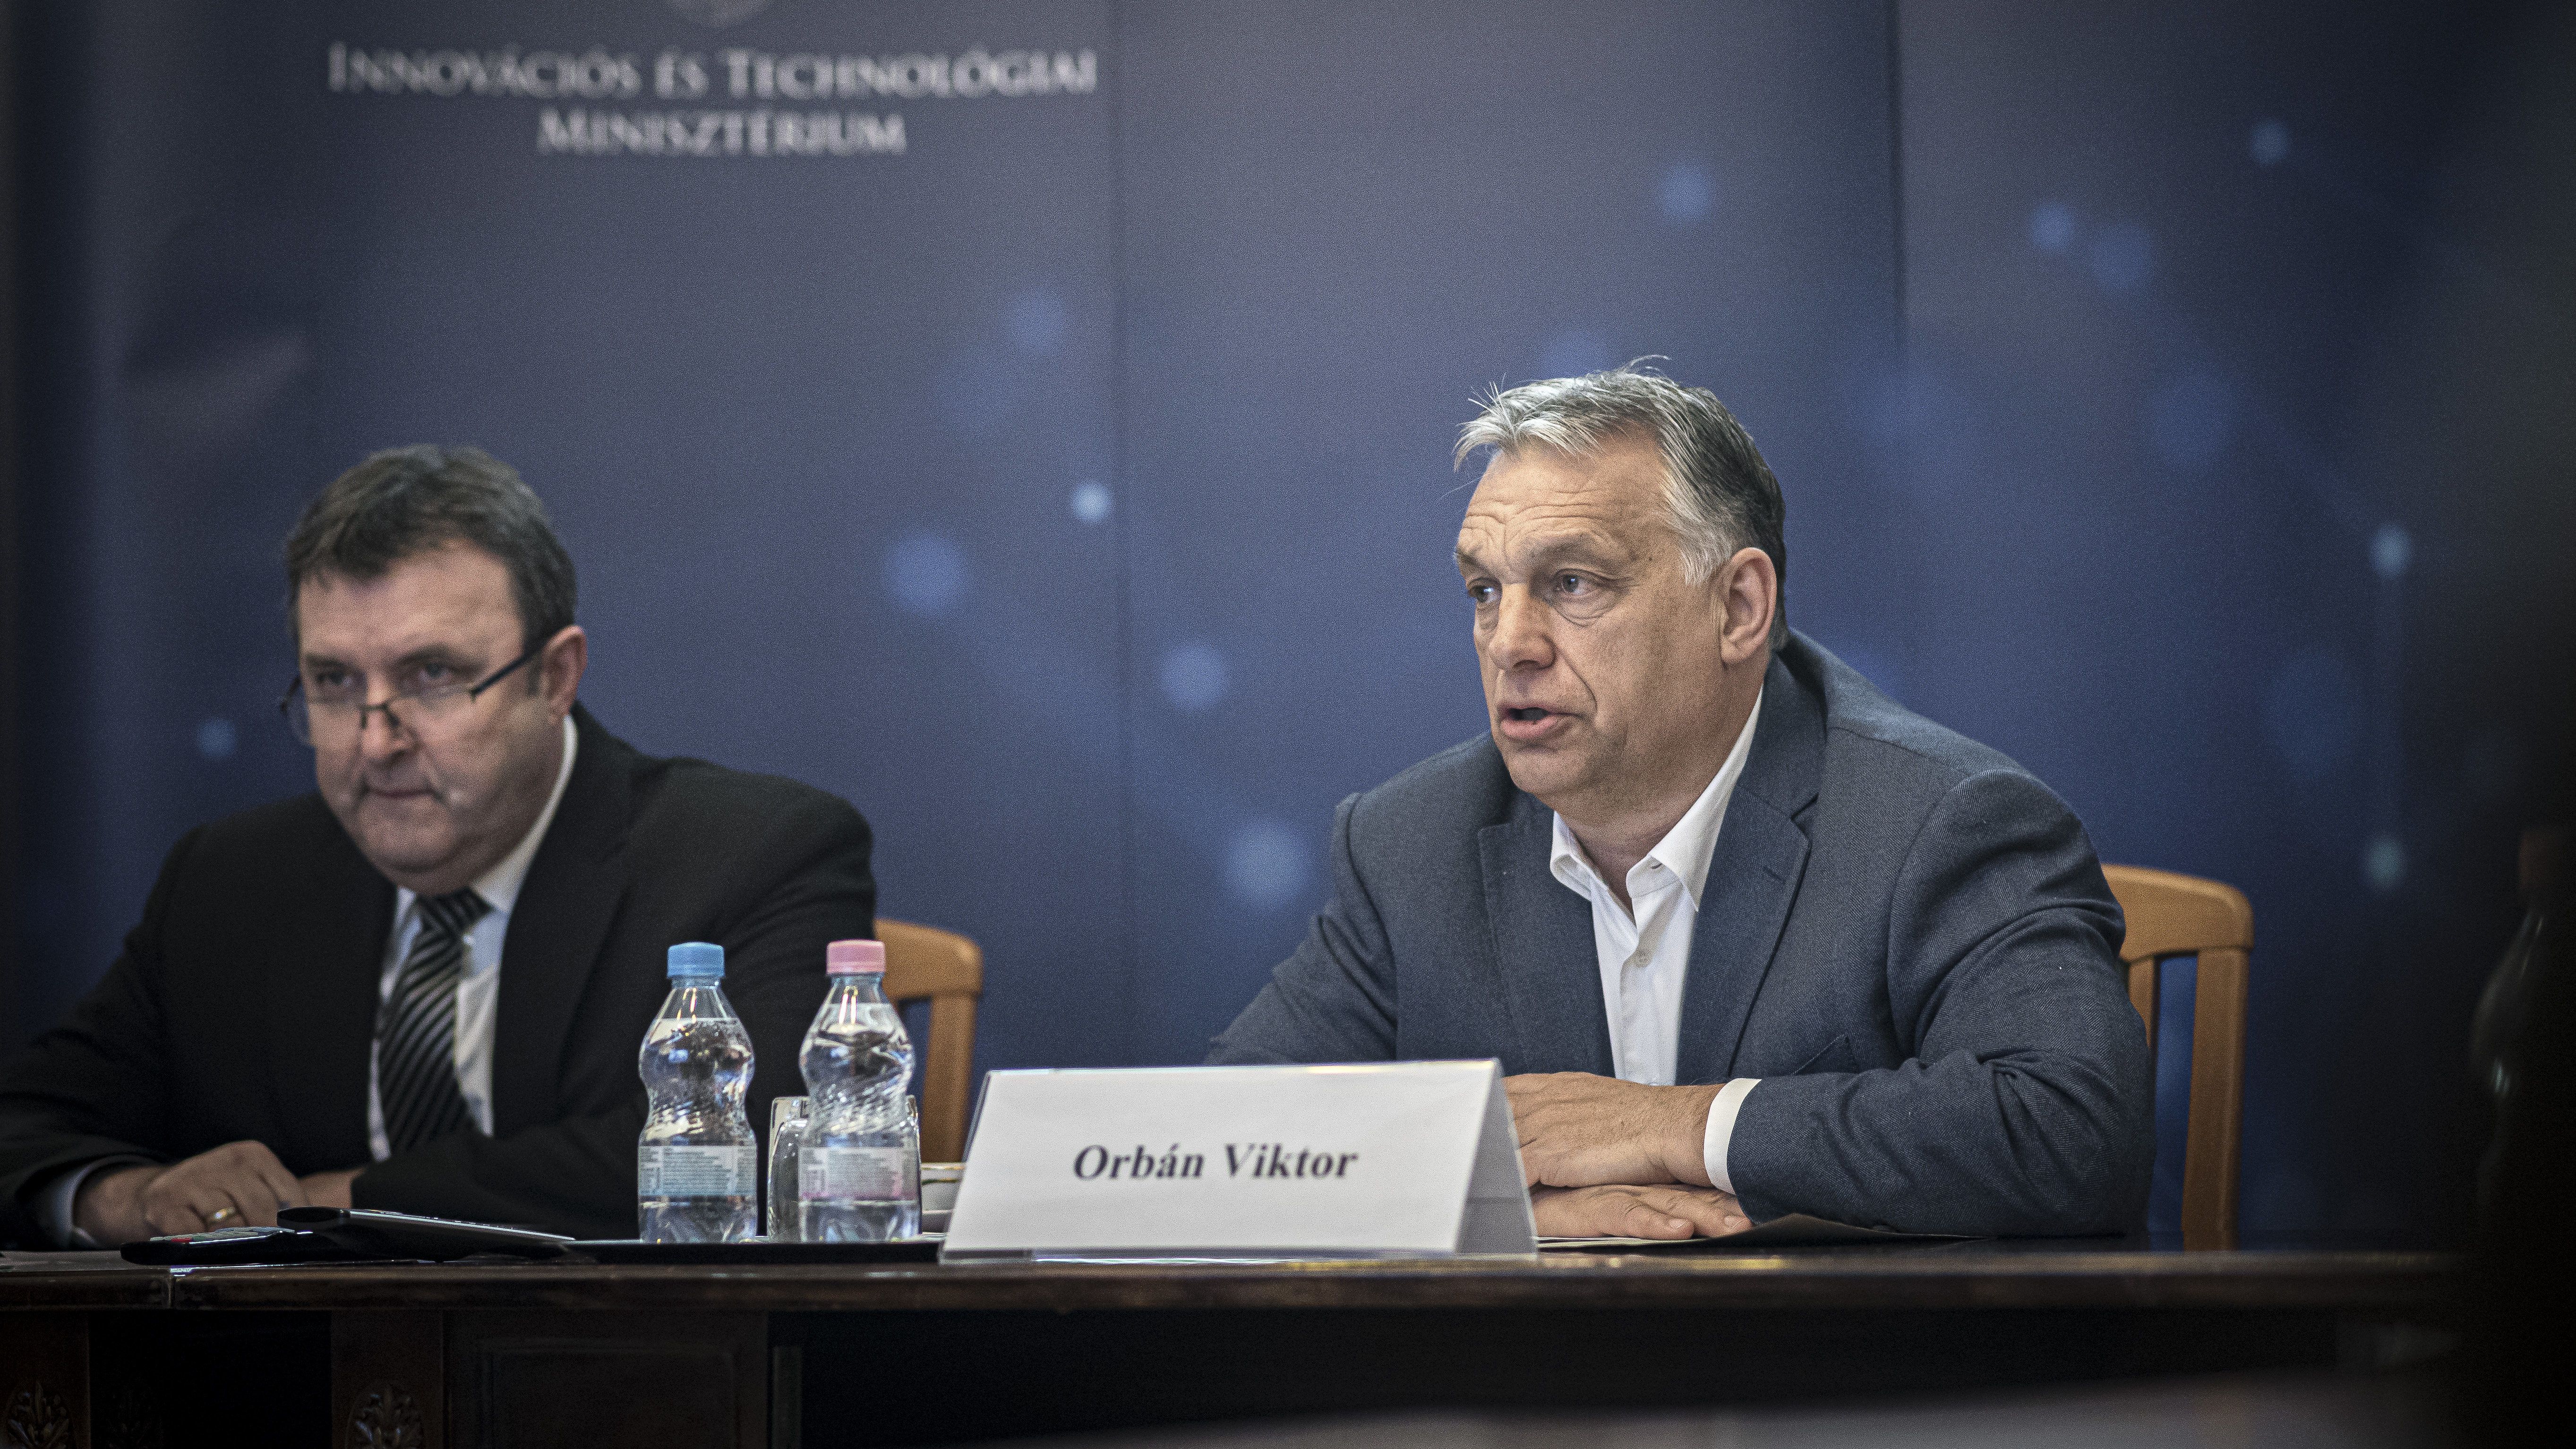 Orbán Viktor: Annyi munkahelyet fogunk létrehozni, amennyit a koronavírus elpusztít